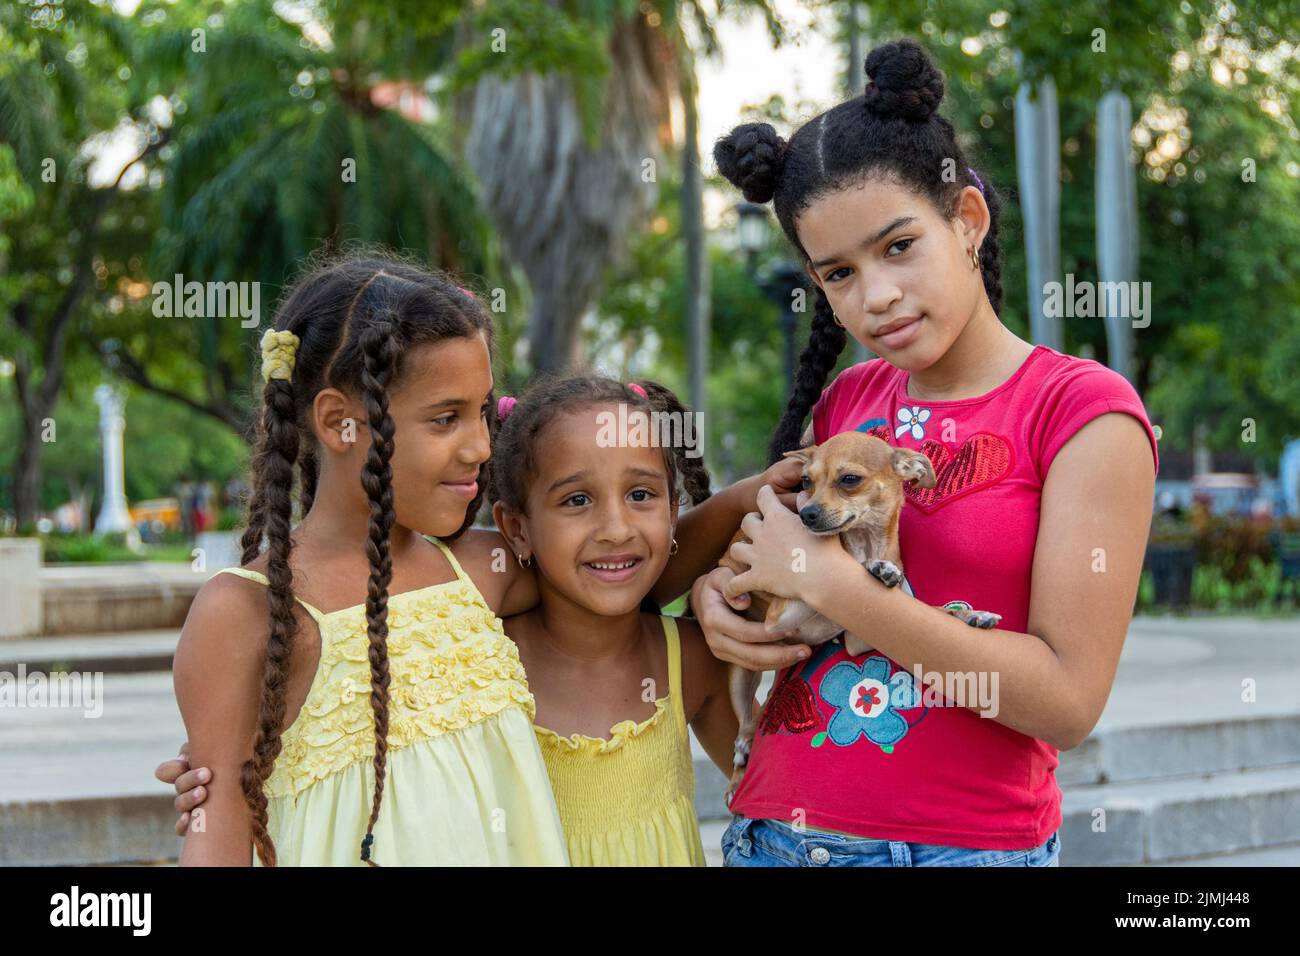 Drei junge kubanische Mädchen, alle Schwestern, posieren mit ihrem kleinen Chihuahua-Hund in Havanna, Kuba. Stockfoto